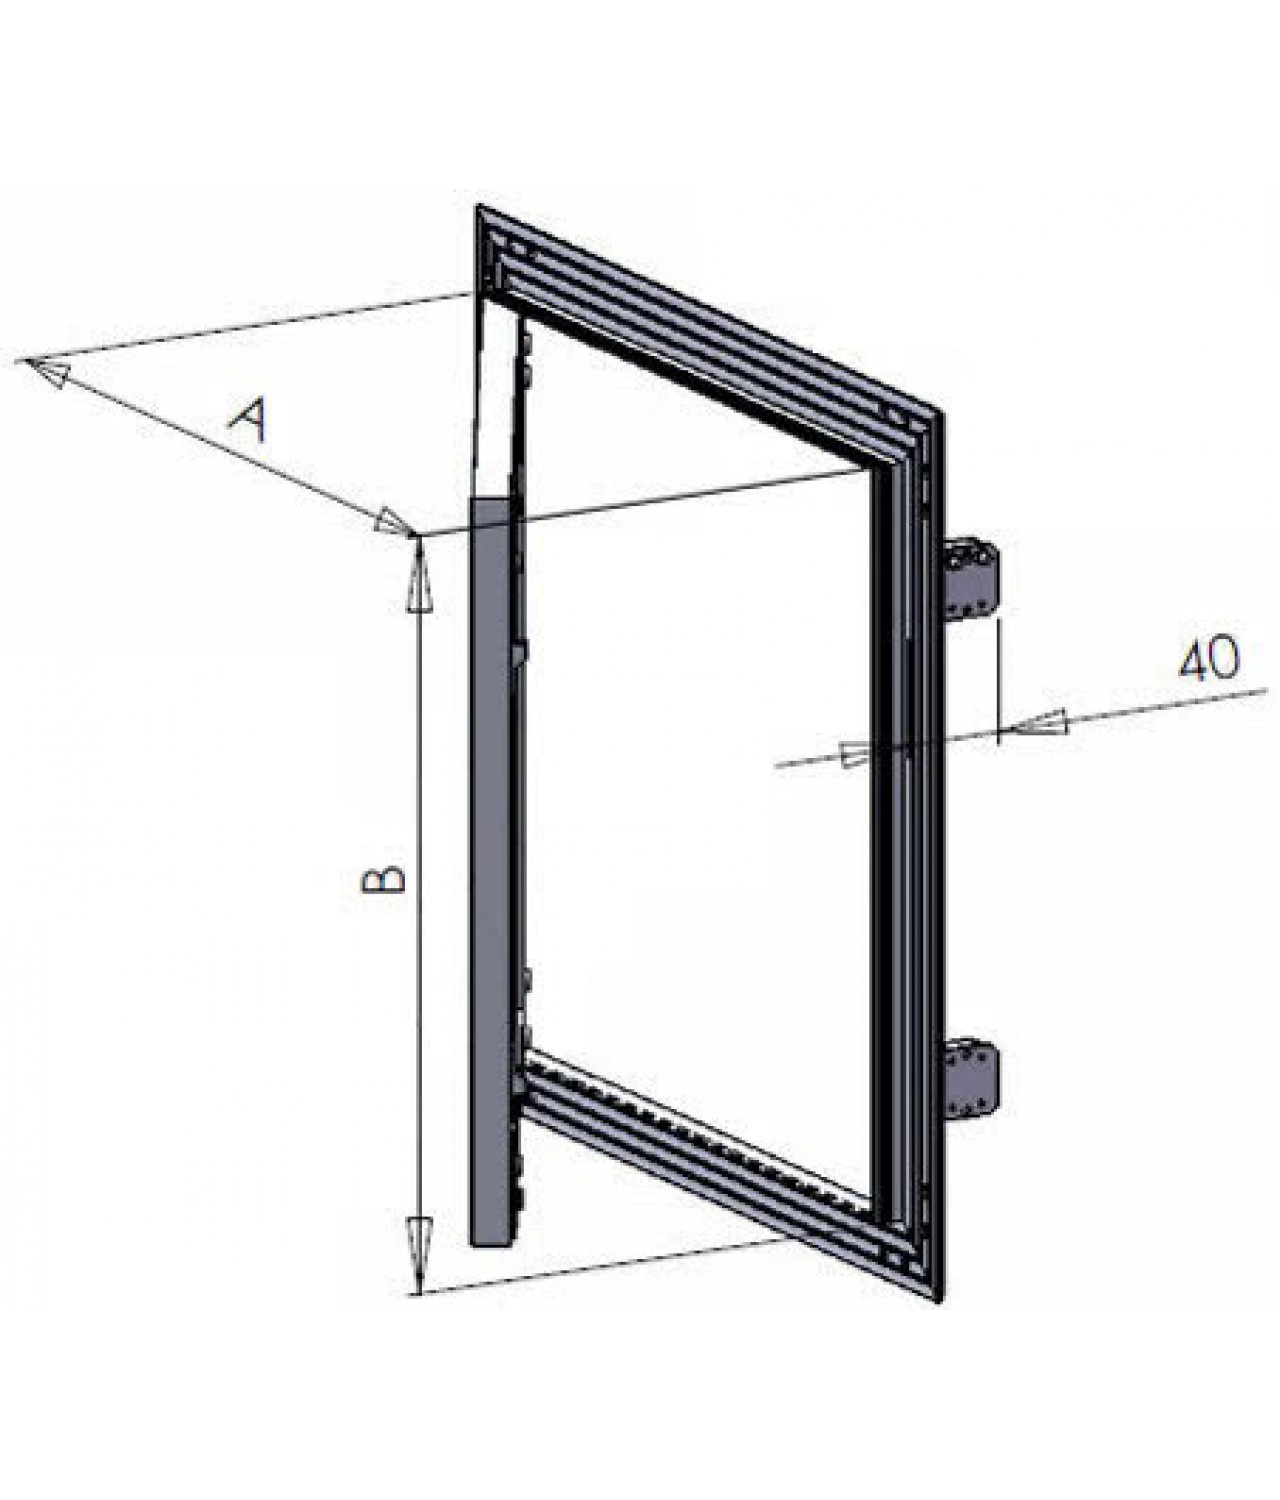 Drywall access panels AluKral - drawing No.2